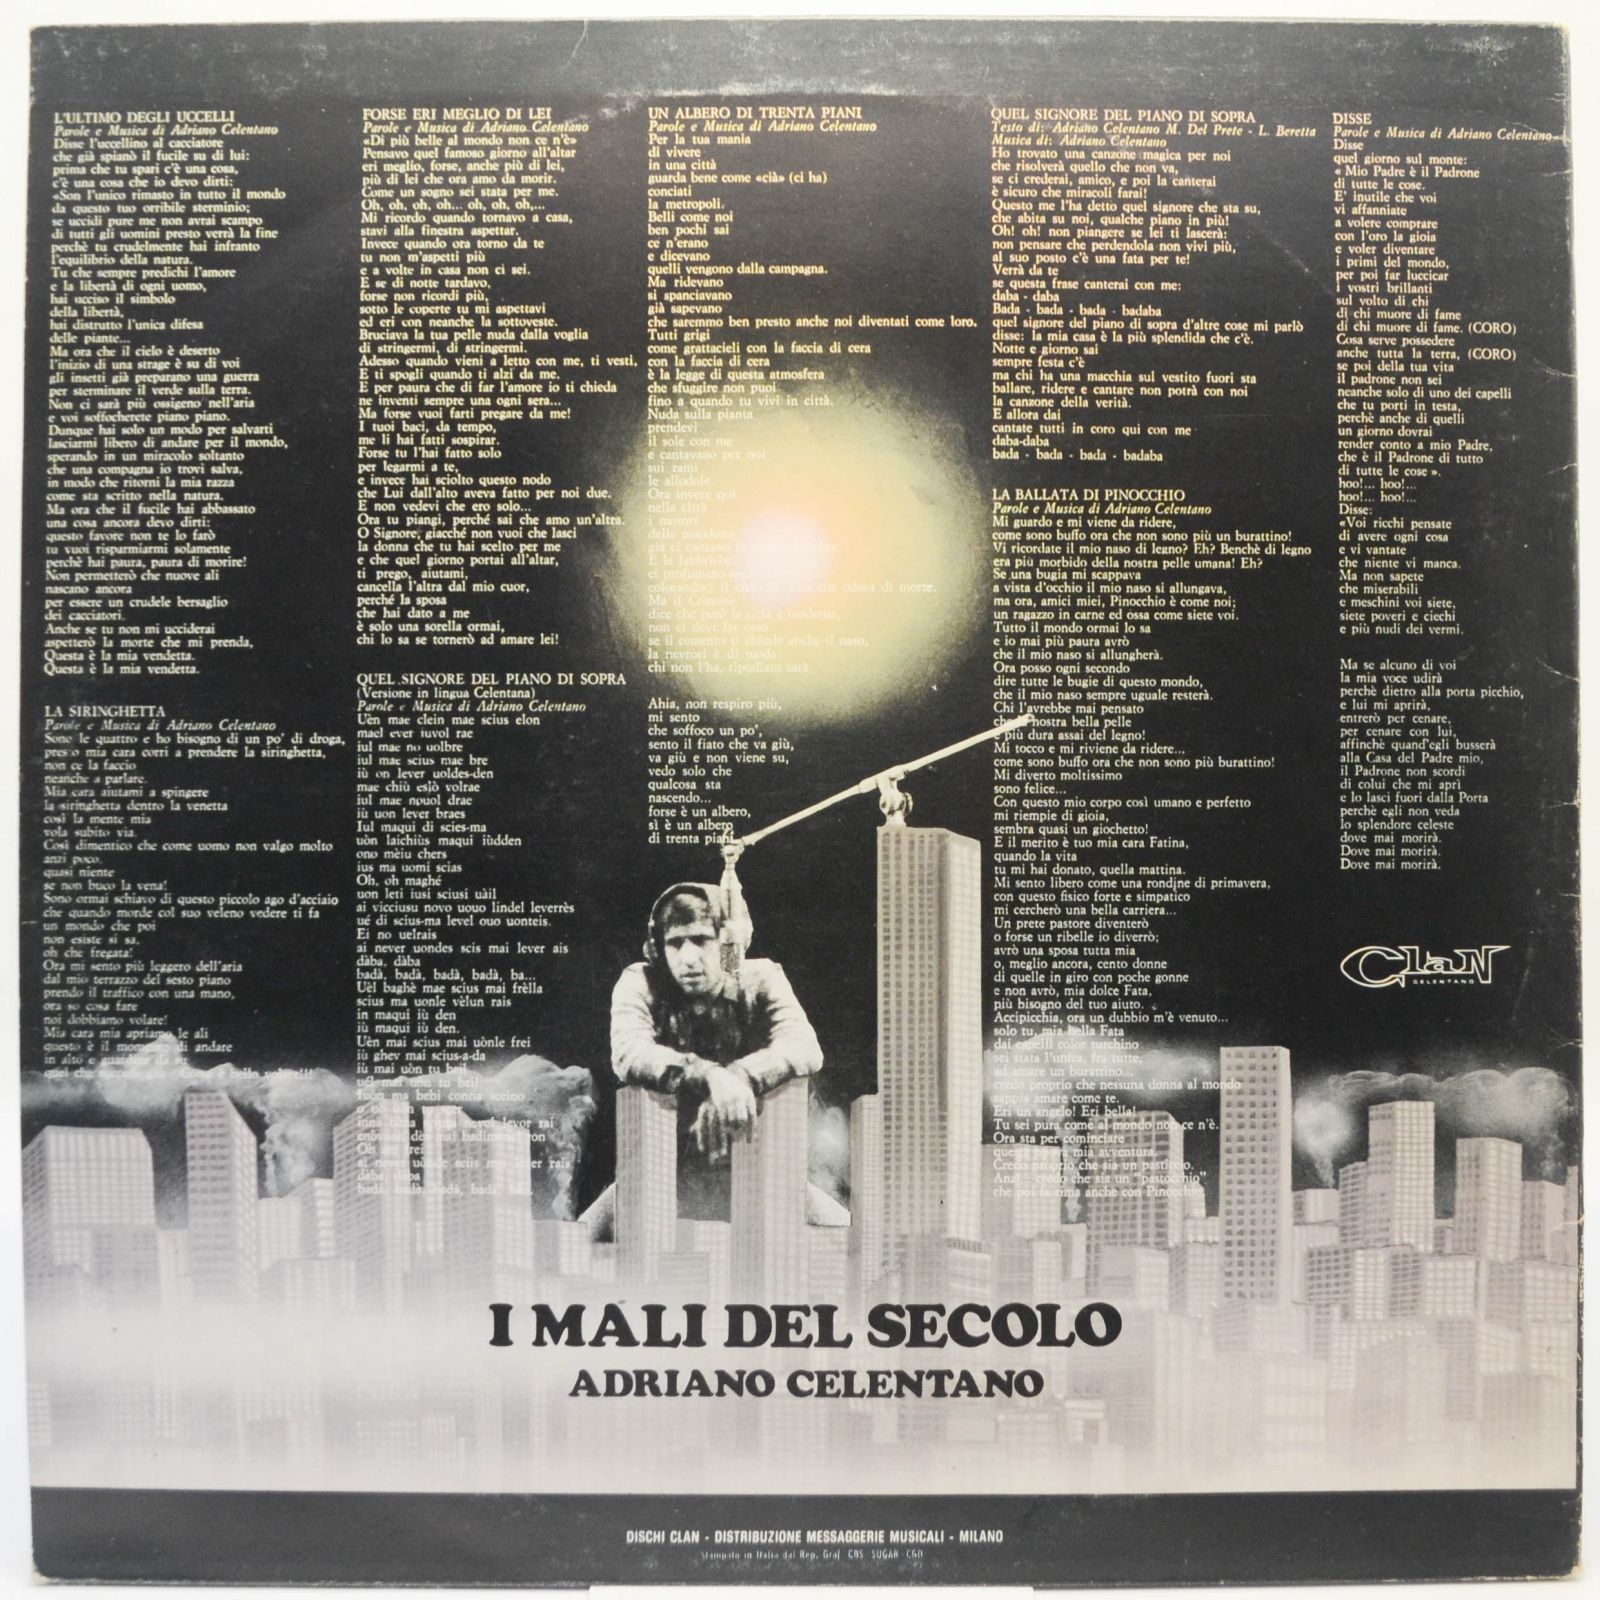 Adriano Celentano — I Mali Del Secolo (Italy, Clan), 1972